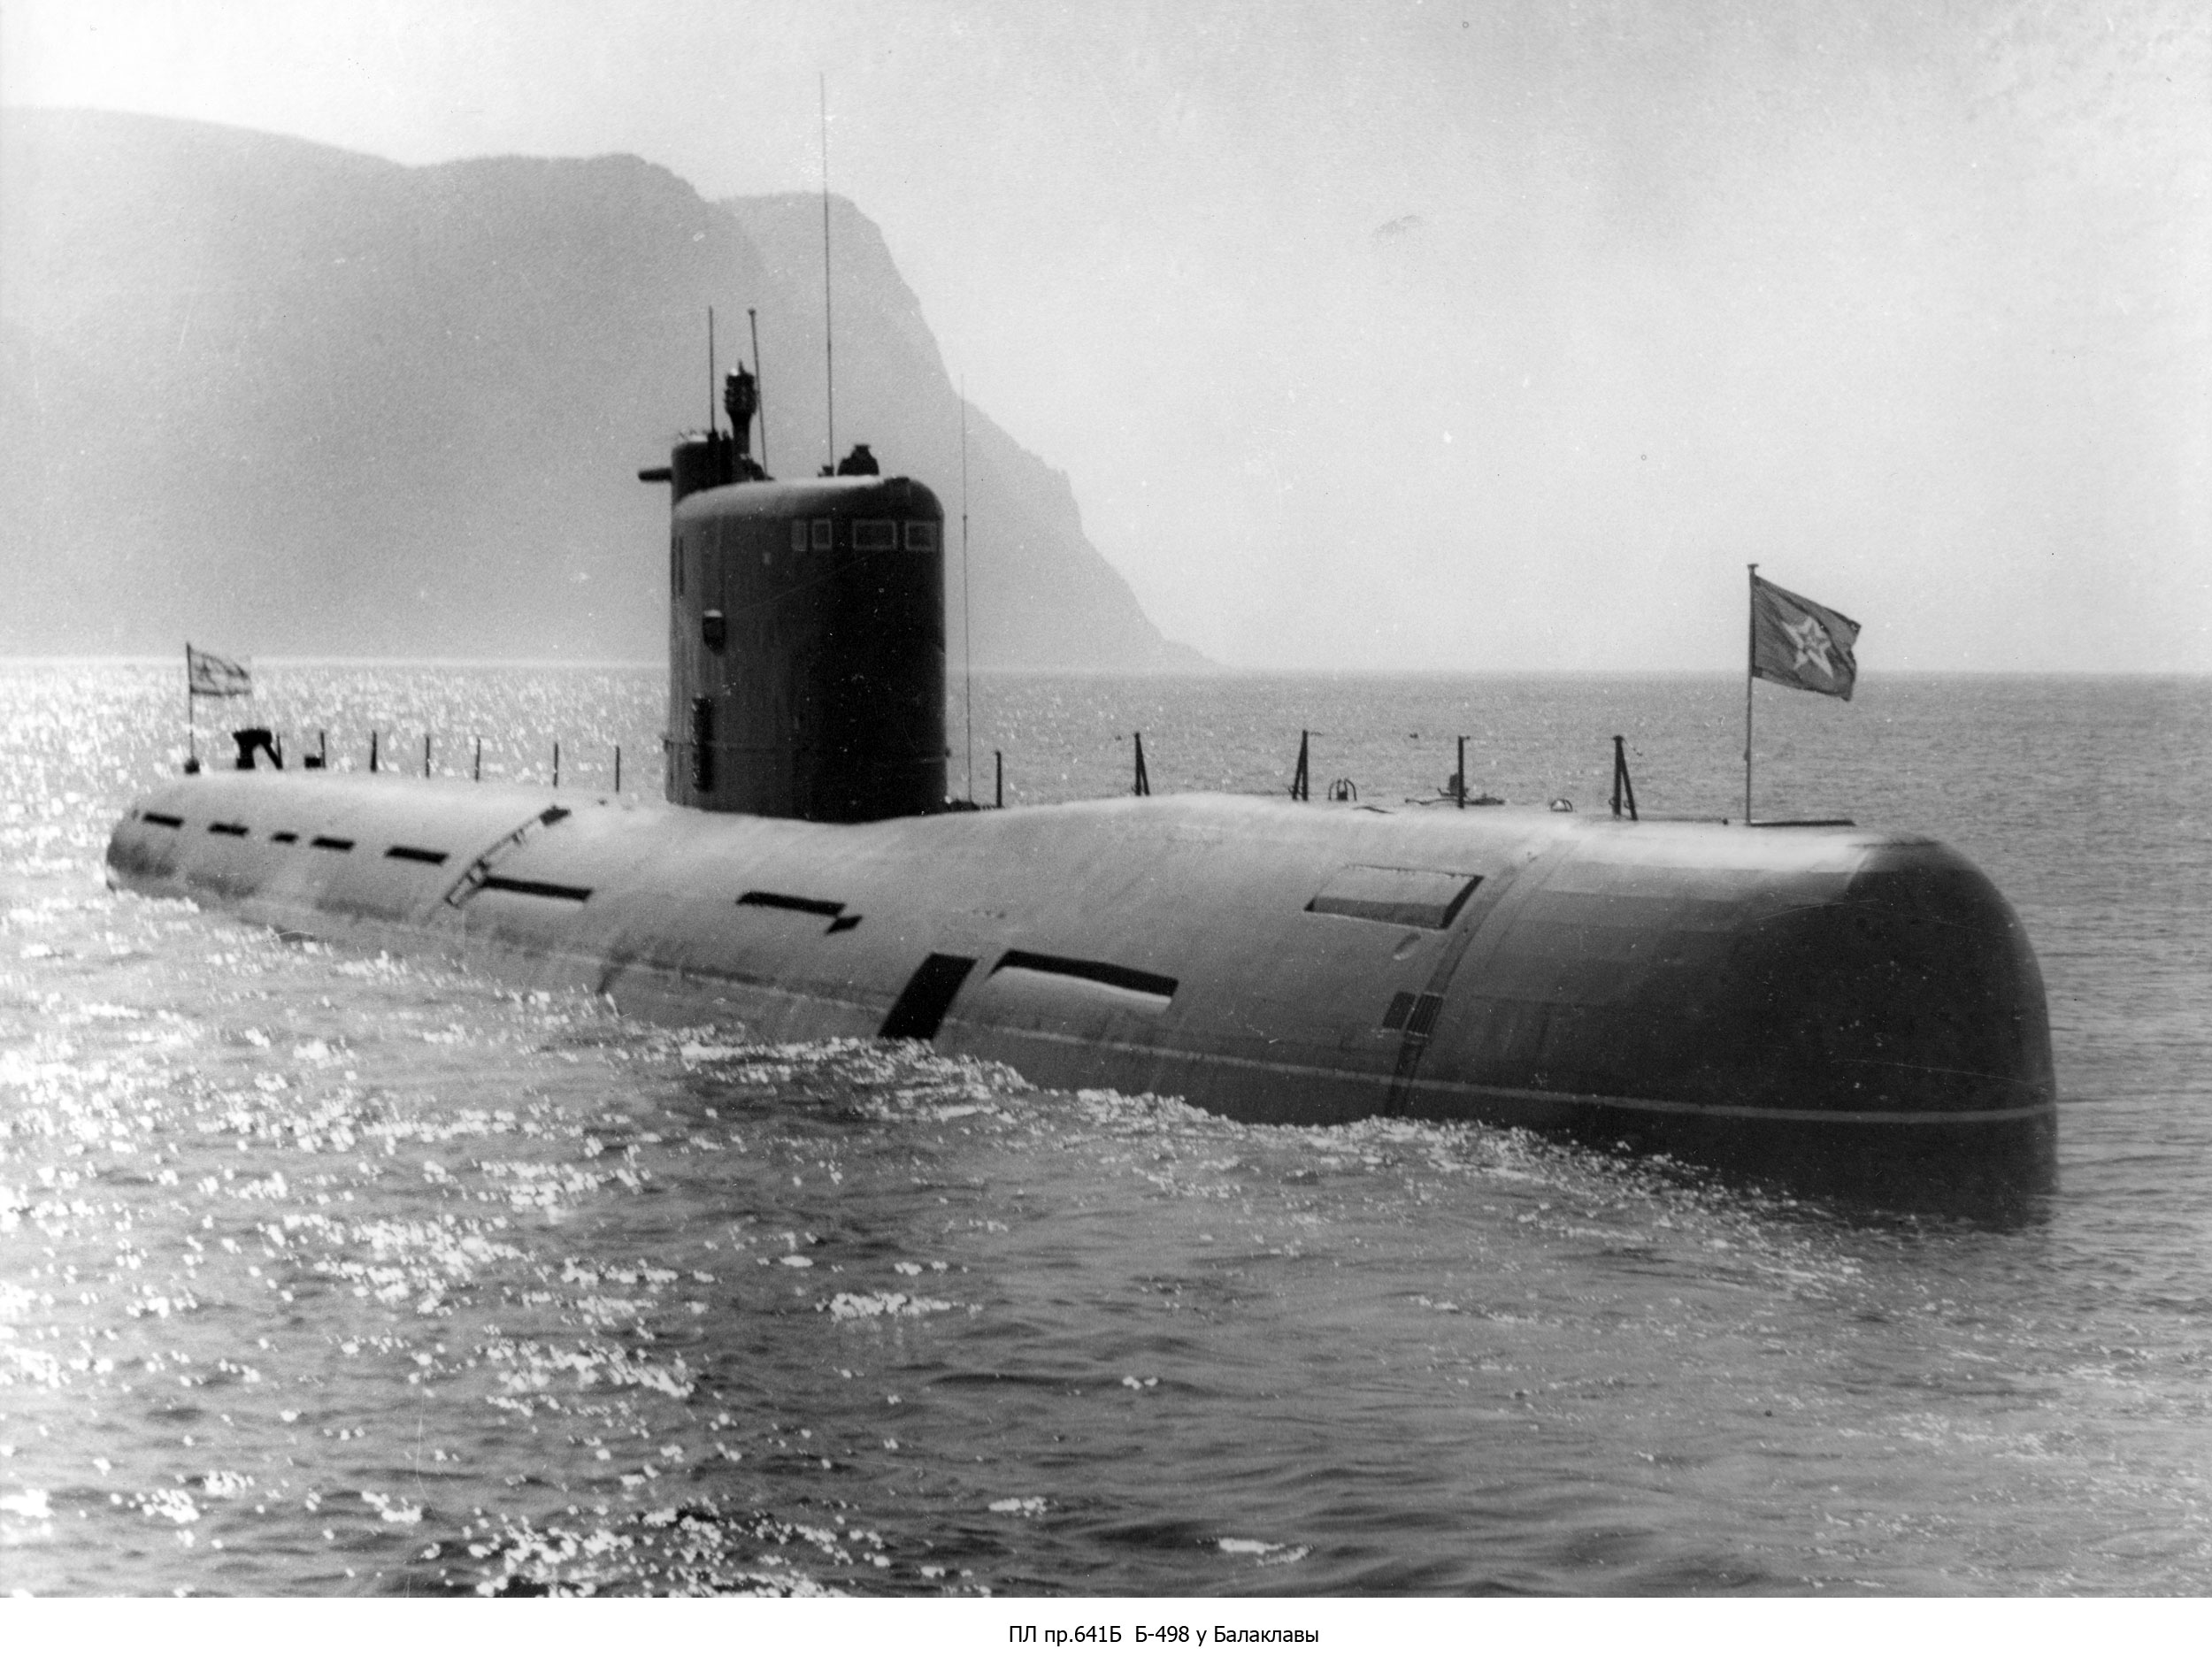 Пл 00. 641б подводная лодка. Подводные лодки проекта 641б. Подводная лодка проект 641. Подлодка проекта 641б.